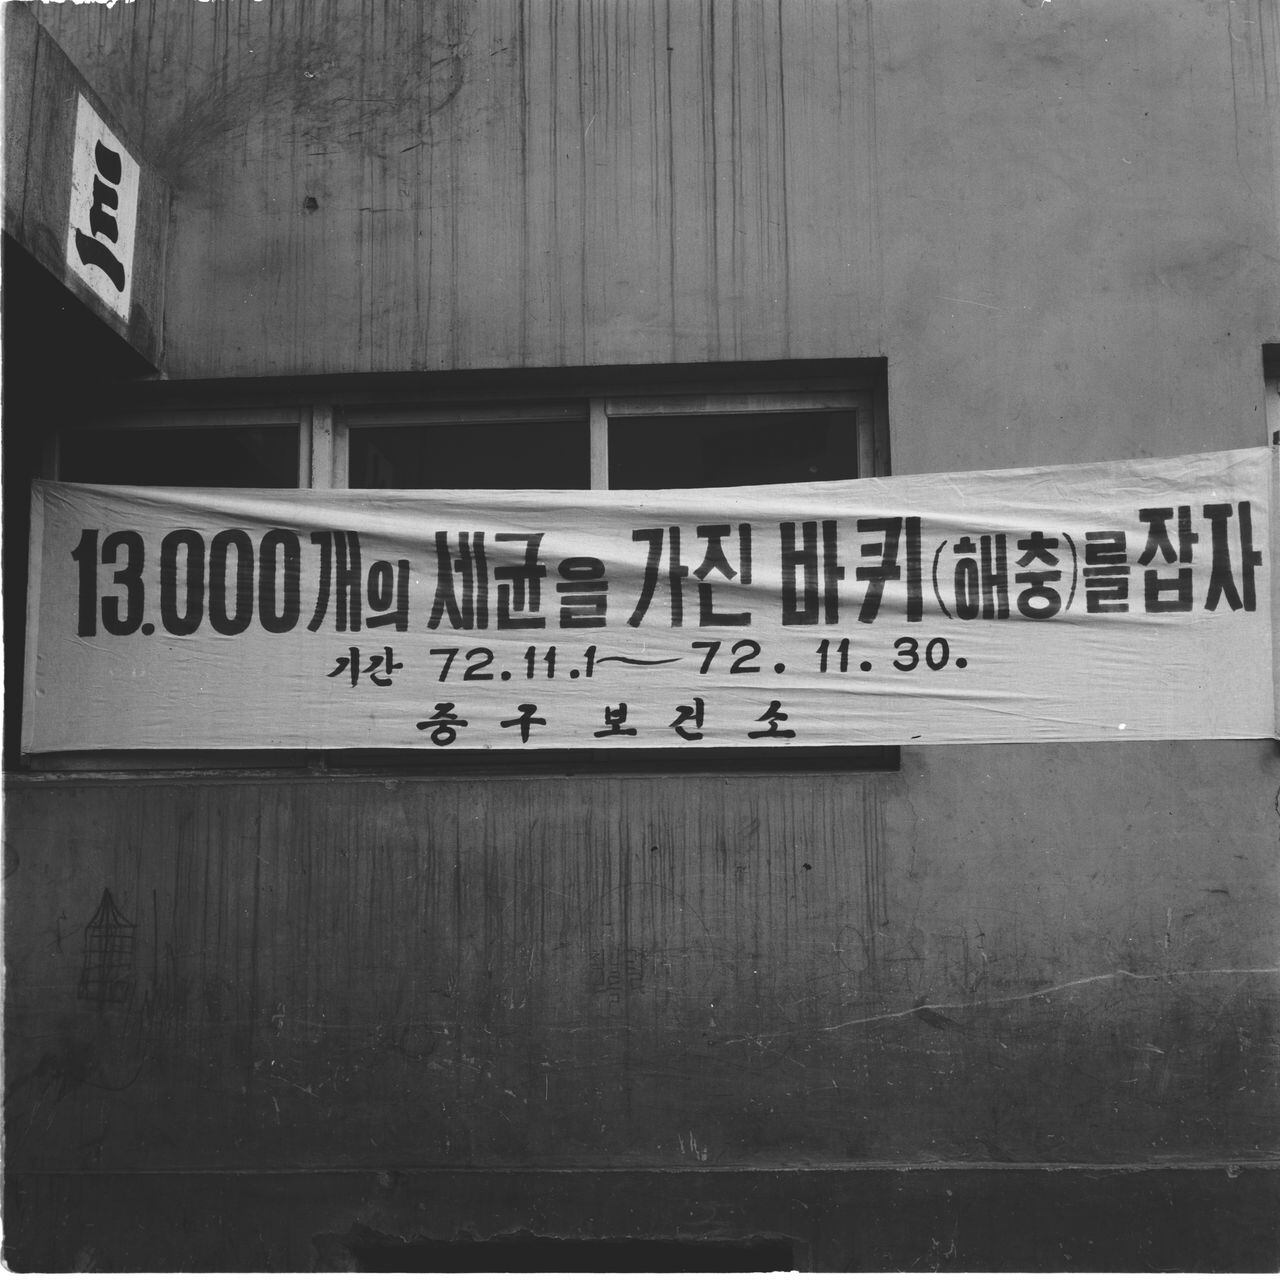 1972년 11월 11일 회현시민아파트에 ‘바퀴벌레 잡기운동 플래카드’가 걸려 있다. /서울역사아카이브 <전체화면 버튼을 클릭하면 좀 더 생생하게 볼 수 있습니다.>